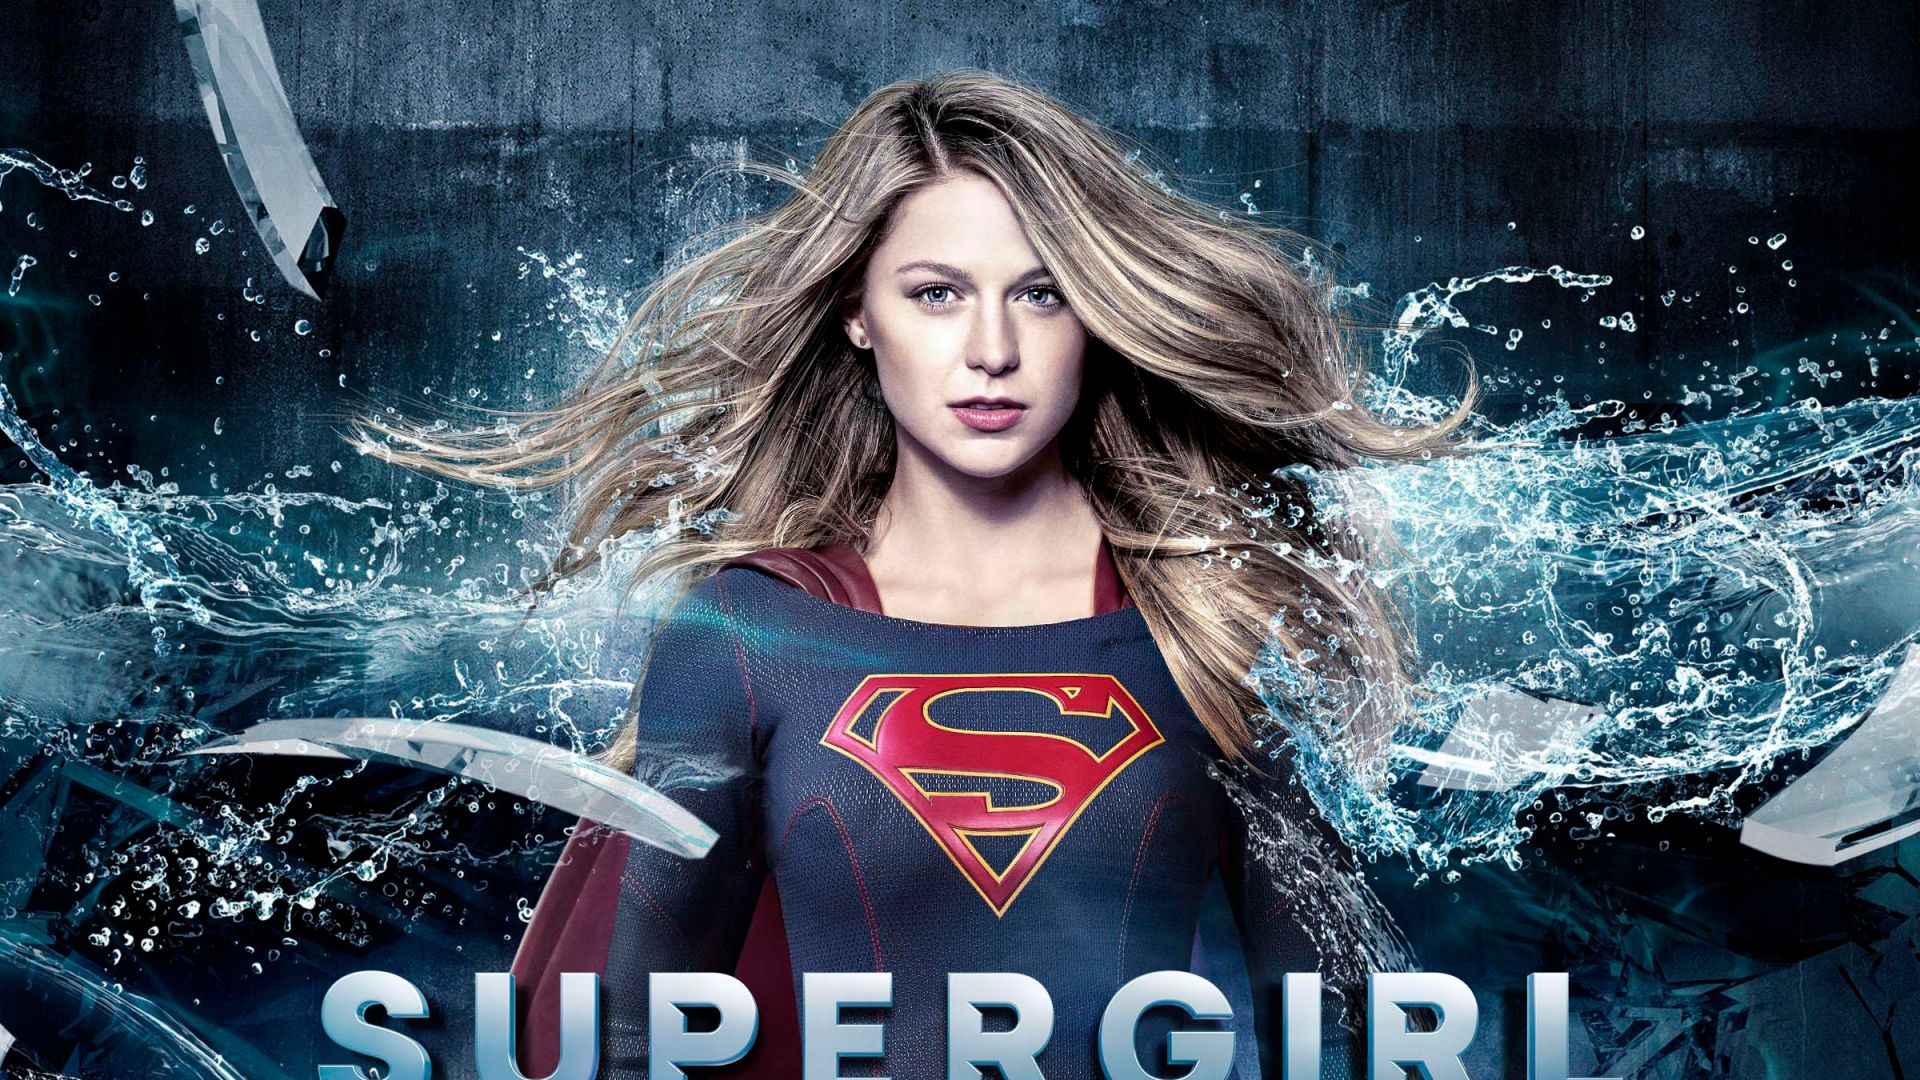 Wallpaper Supergirl, 2017 TV show, super human